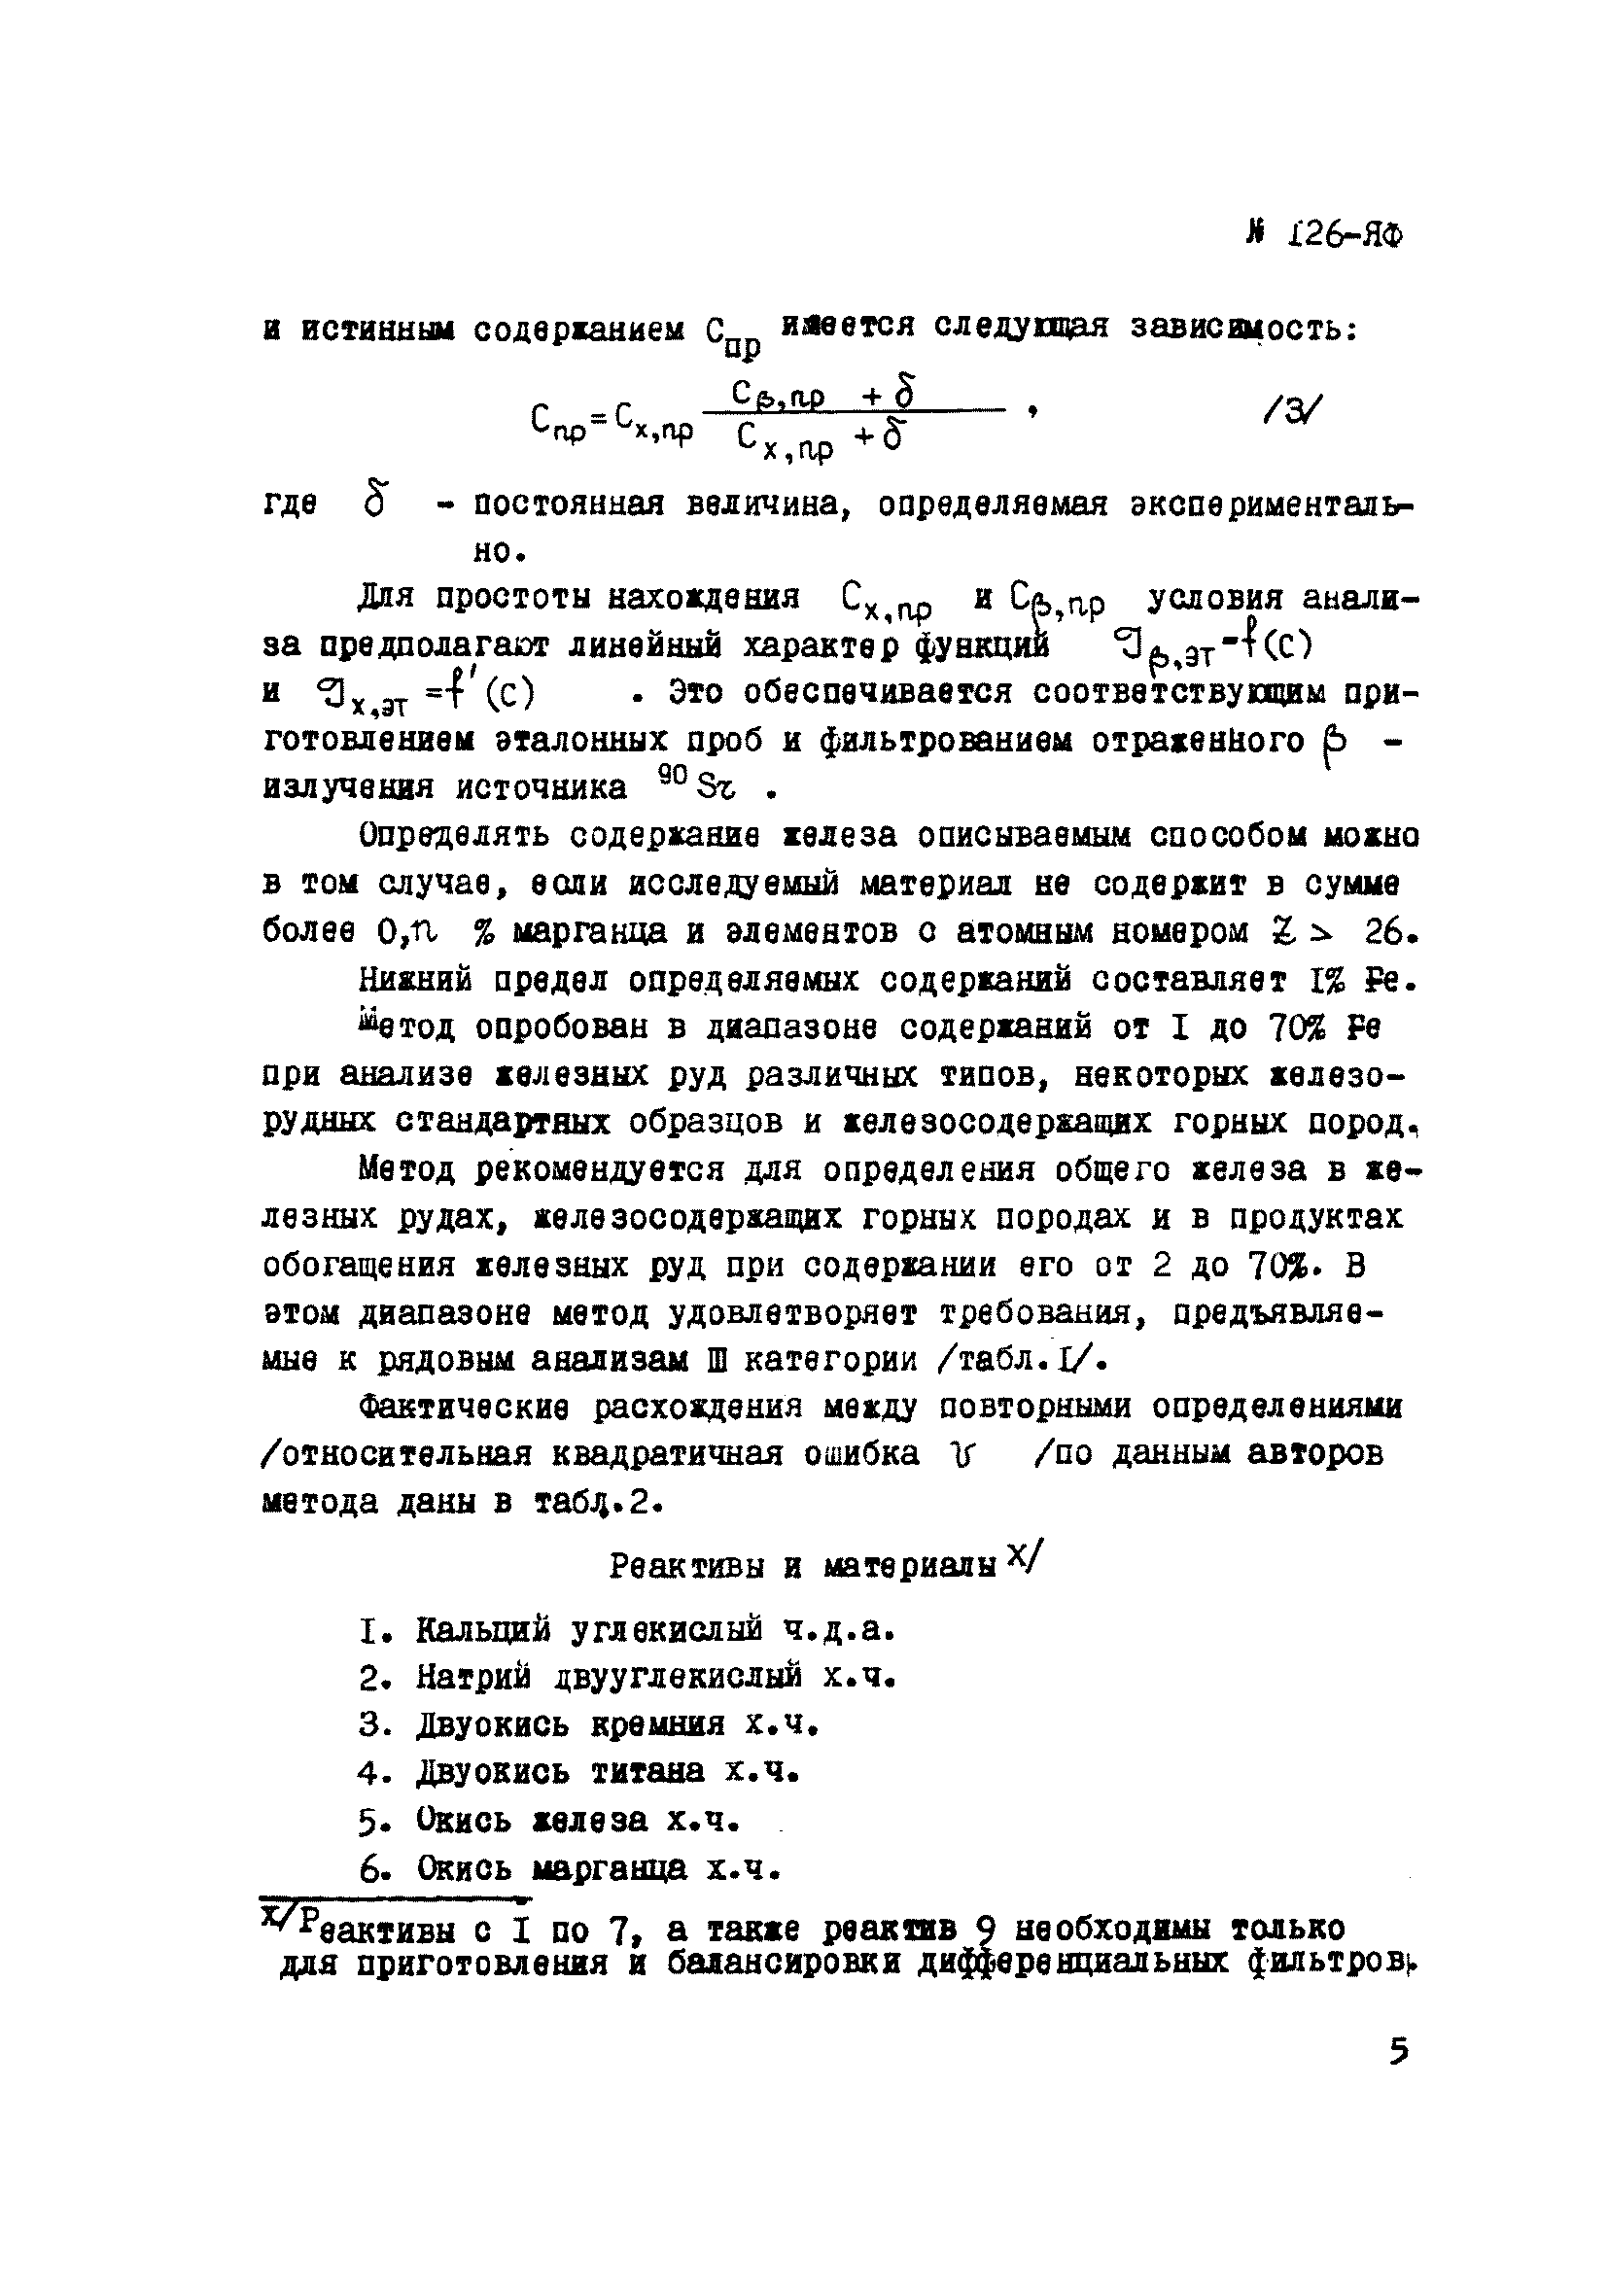 Инструкция НСАМ 126-ЯФ